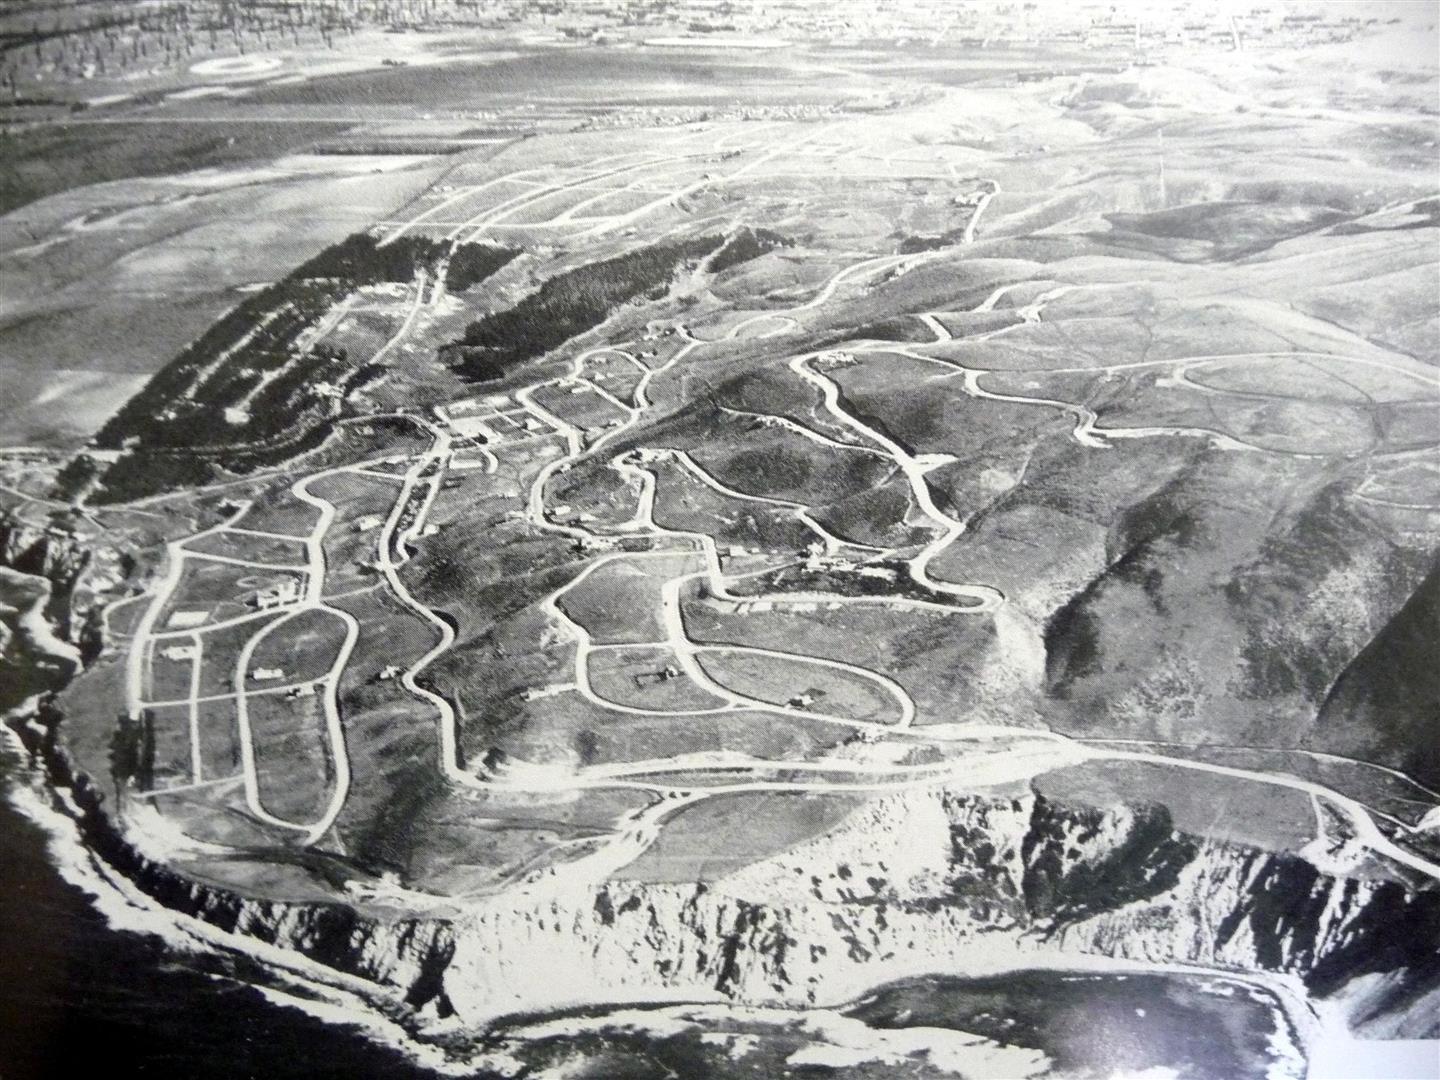 1927 Palos Verdes Road Development